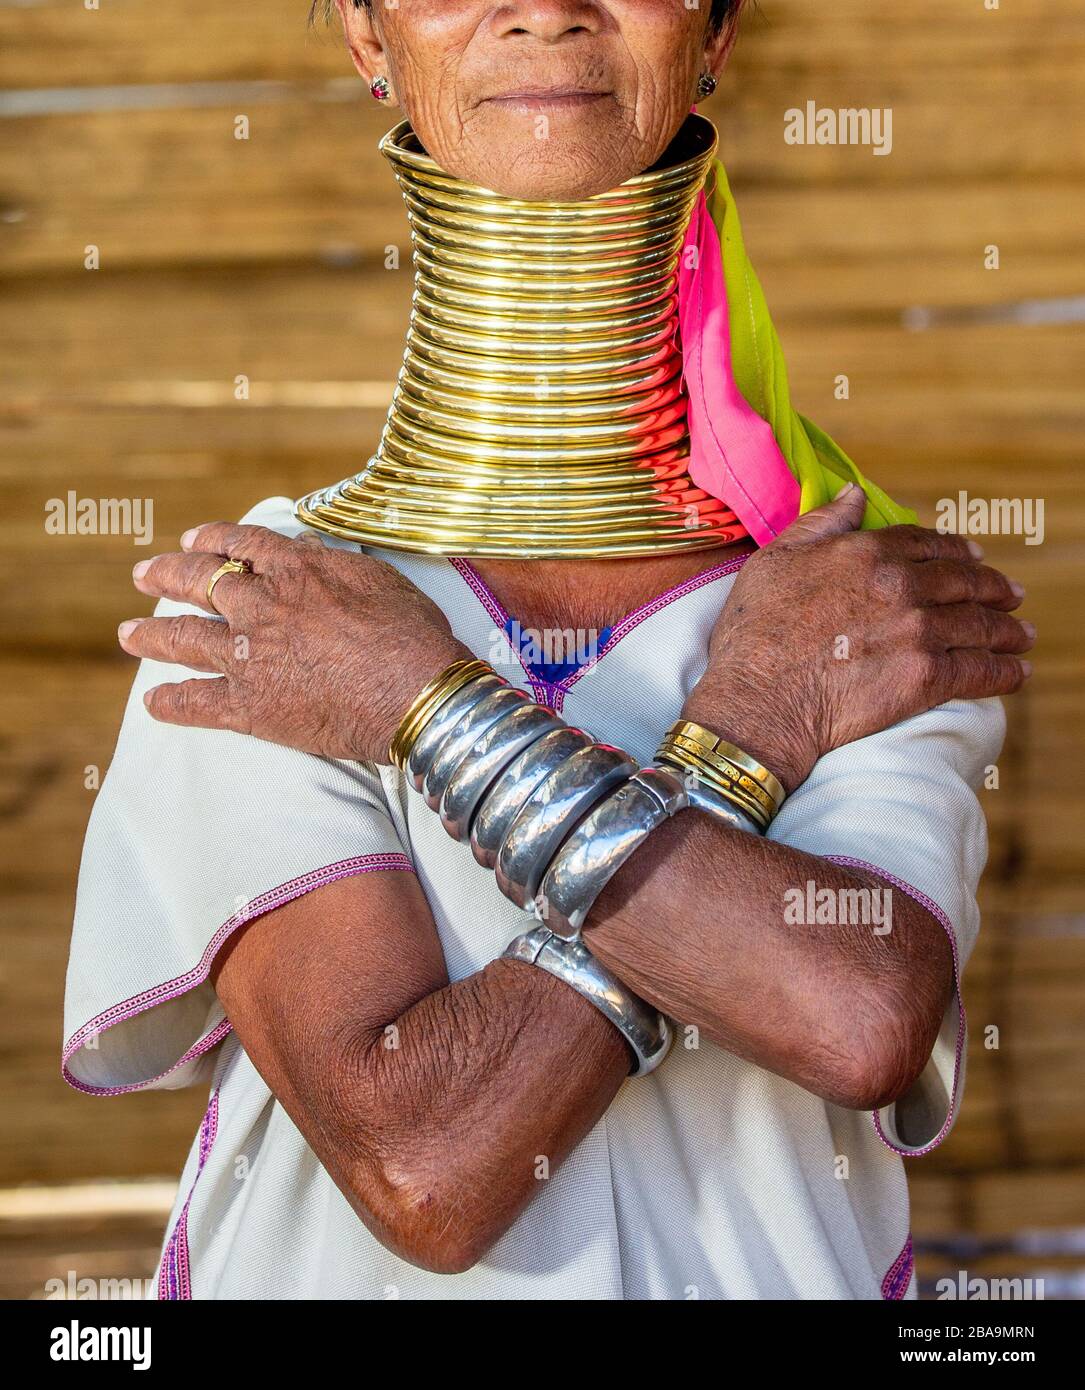 Elemente des traditionellen weiblichen Schmucks der Padaung-Menschen (Ringe am Hals und Armbänder an den Händen). Februar 2019 In Myanmar Statt. Stockfoto